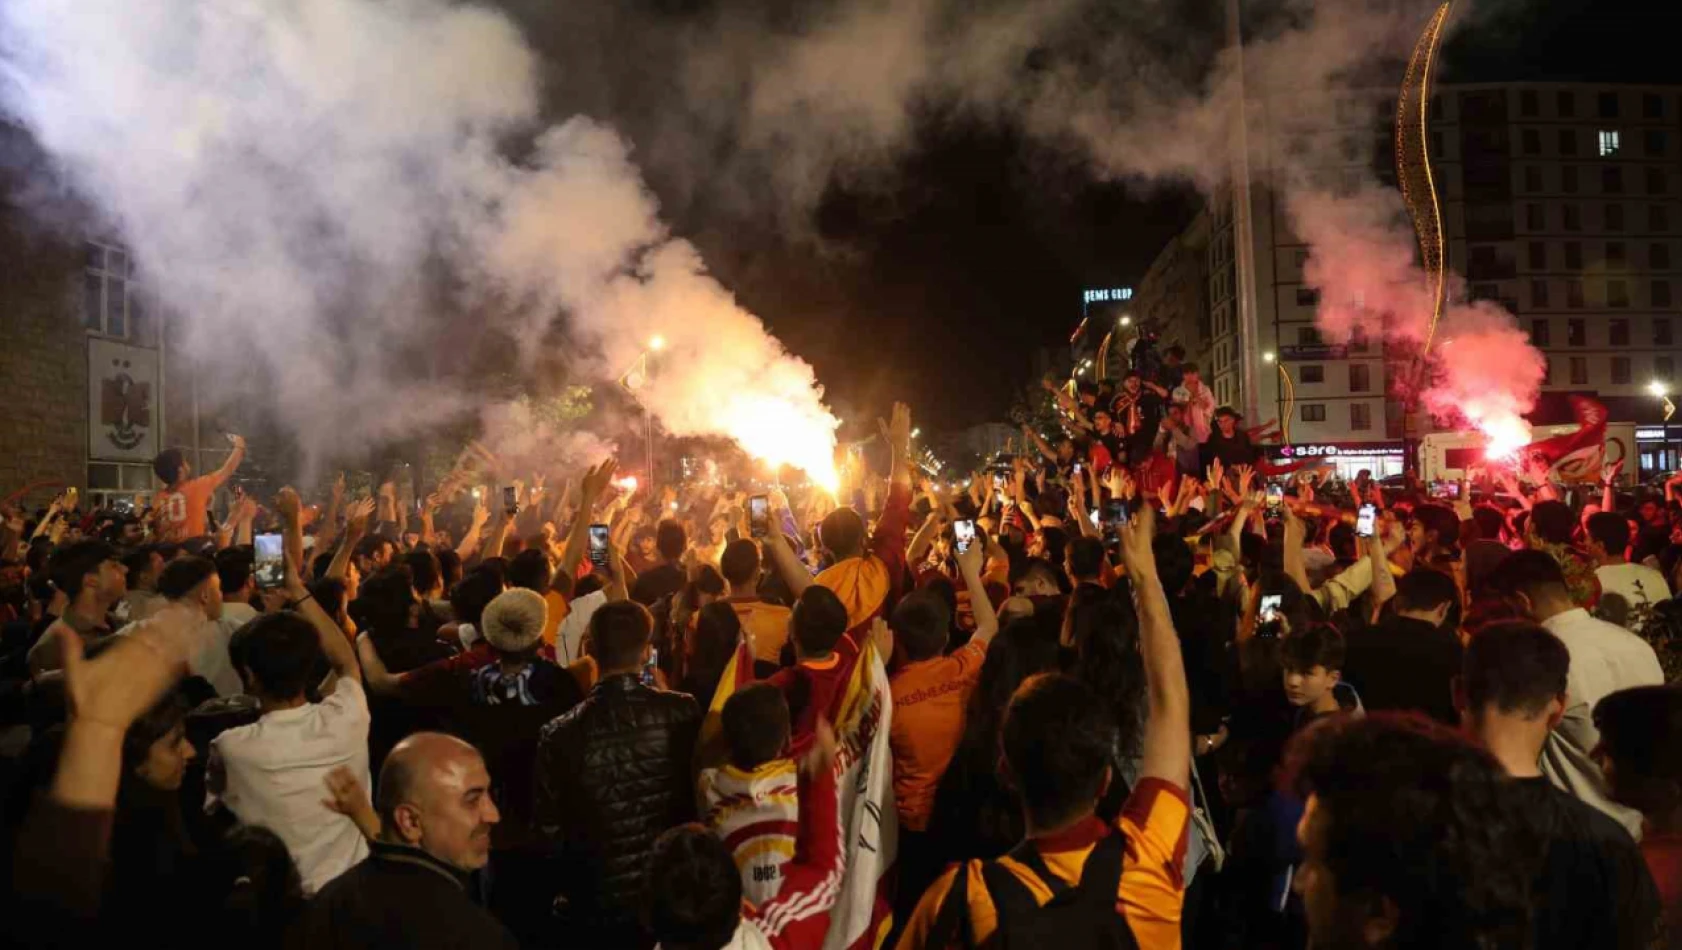 Elazığ'da Galatasaray taraftarlarının şampiyonluk coşkusu